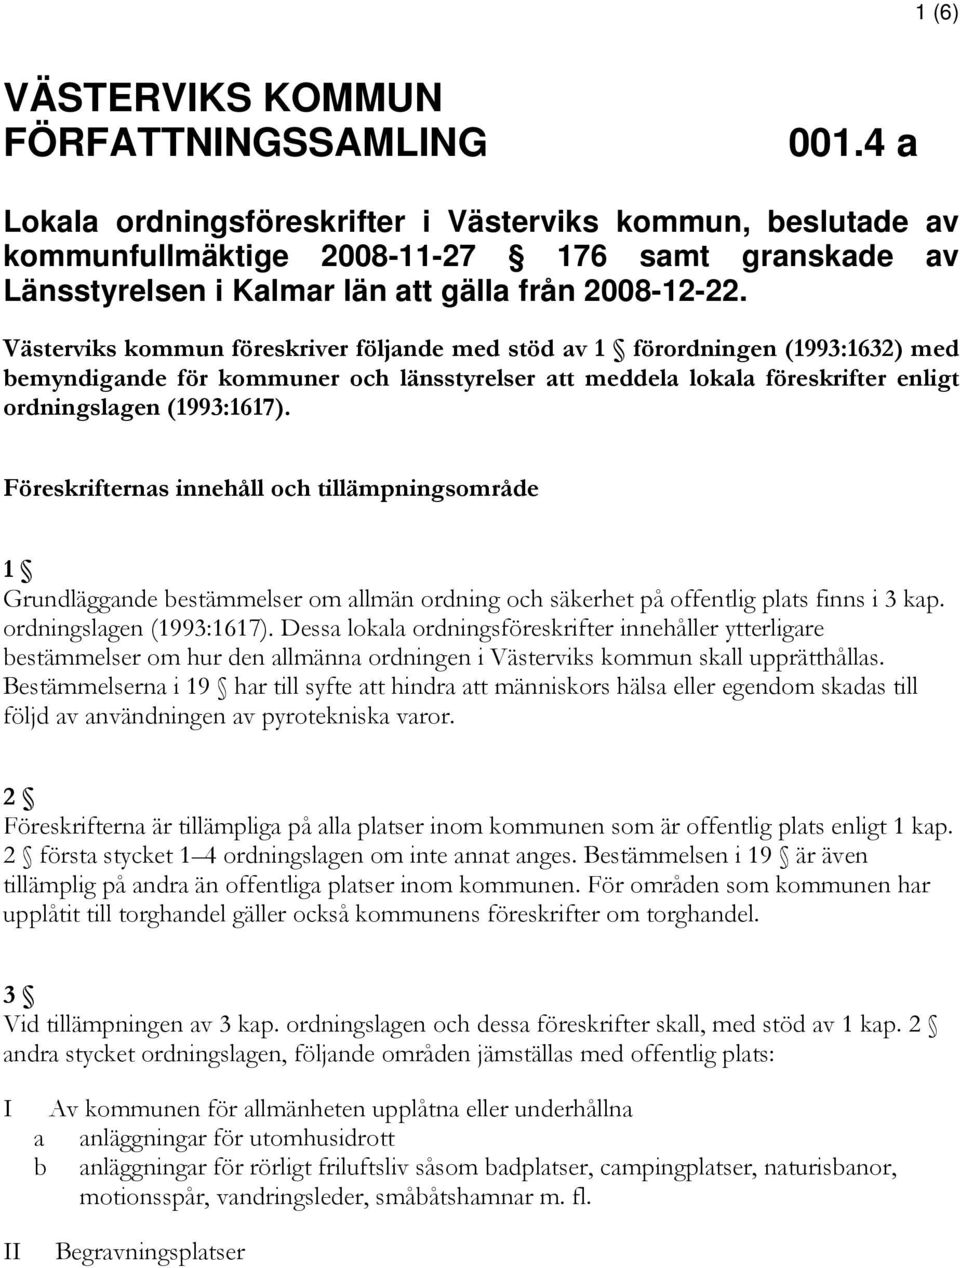 Västerviks kommun föreskriver följande med stöd av 1 förordningen (1993:1632) med bemyndigande för kommuner och länsstyrelser att meddela lokala föreskrifter enligt ordningslagen (1993:1617).